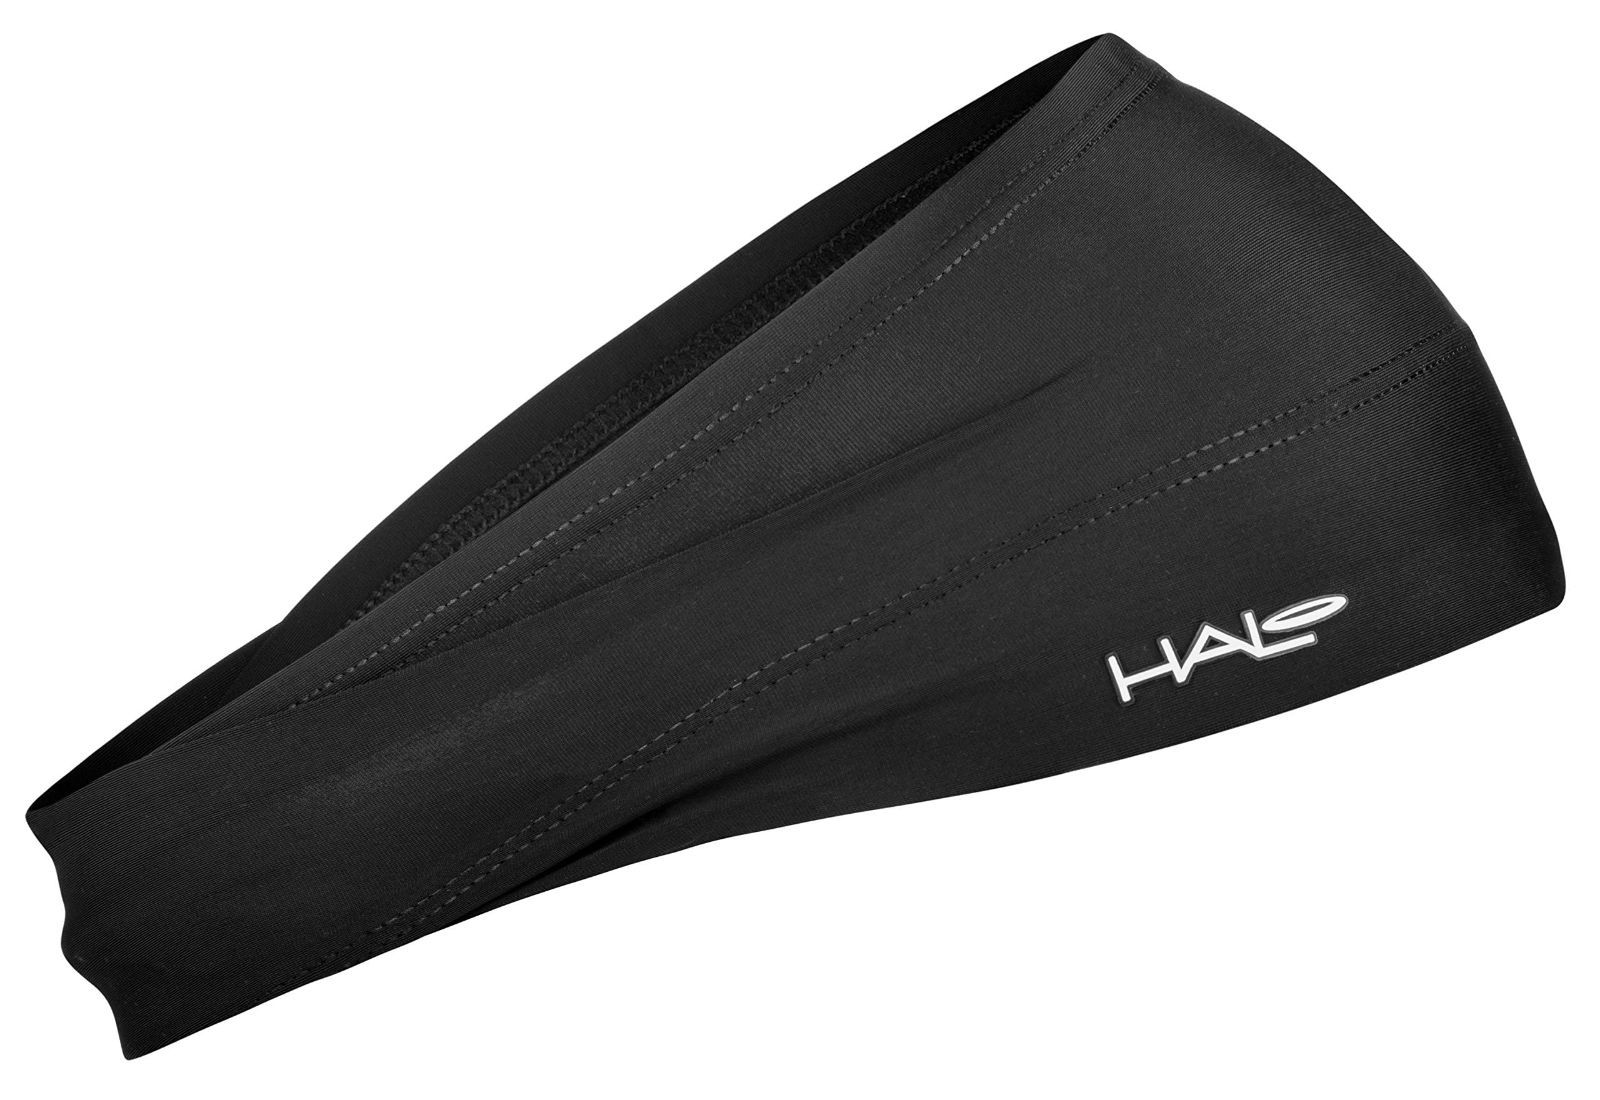 Halo headband(ヘイロ ヘッドバンド) 目に汗がはいらないヘッドバンド Halo グラフィック プルオーバータイプ H0024 ランニング トレイルランニング トレラン ジョギング マラソン 登山 アウトドア